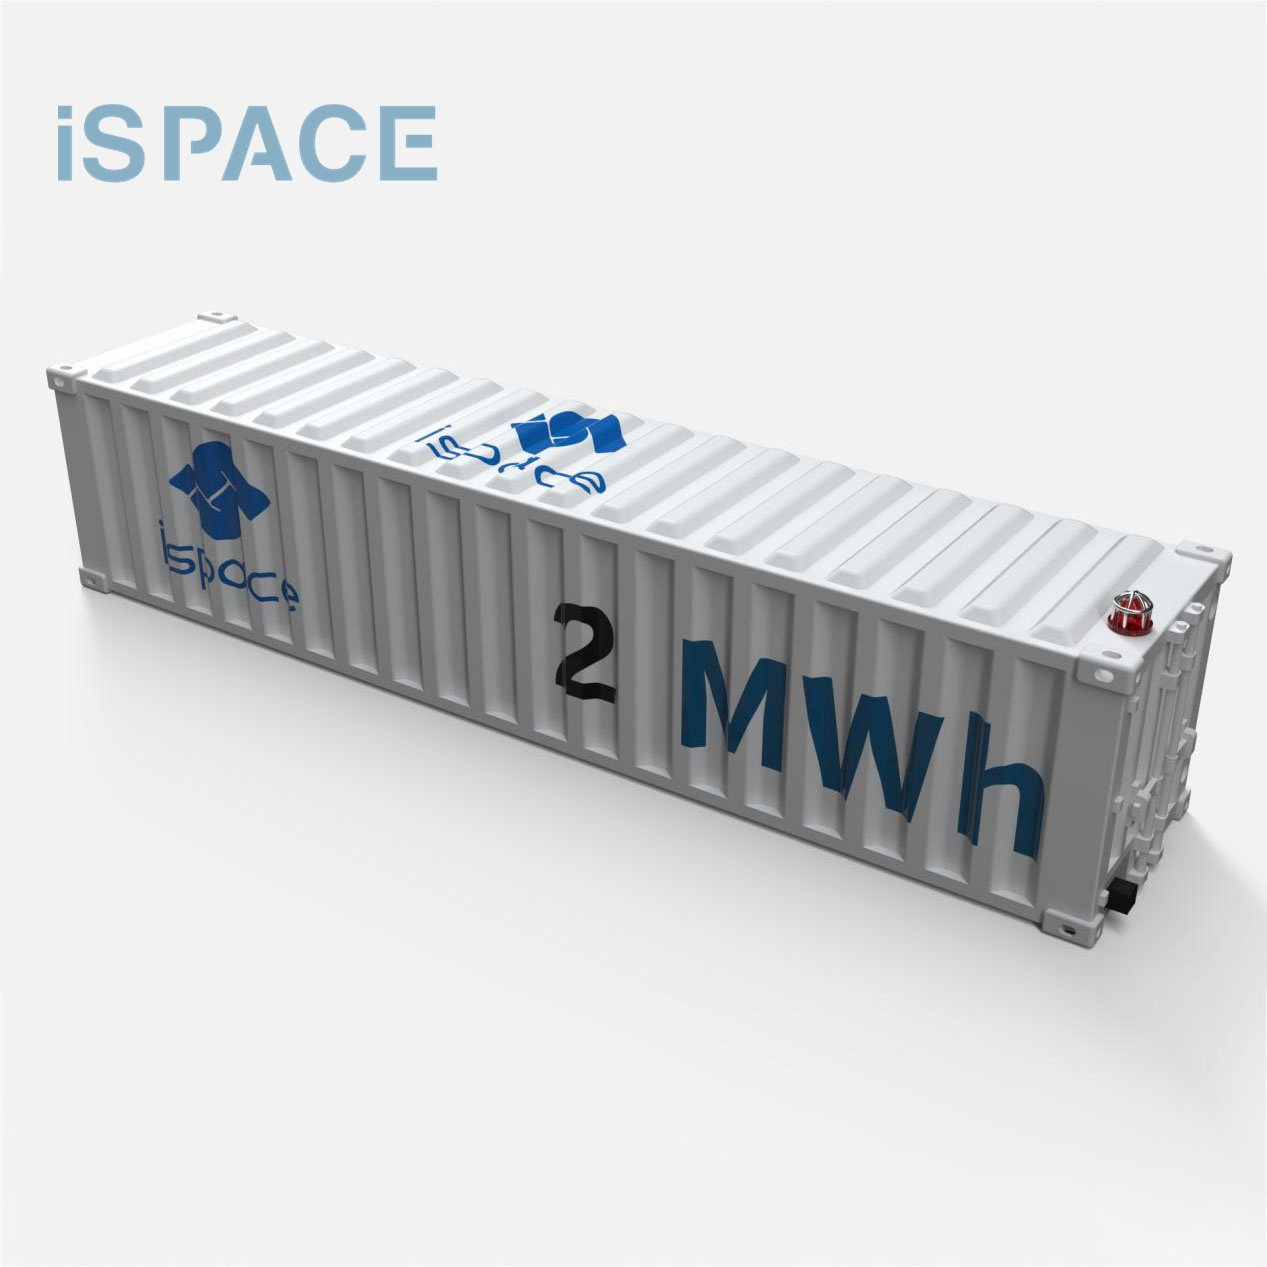 Tööstuslik ja kaubanduslik konteinerenergia salvestamise süsteem koos päikesesüsteemiga